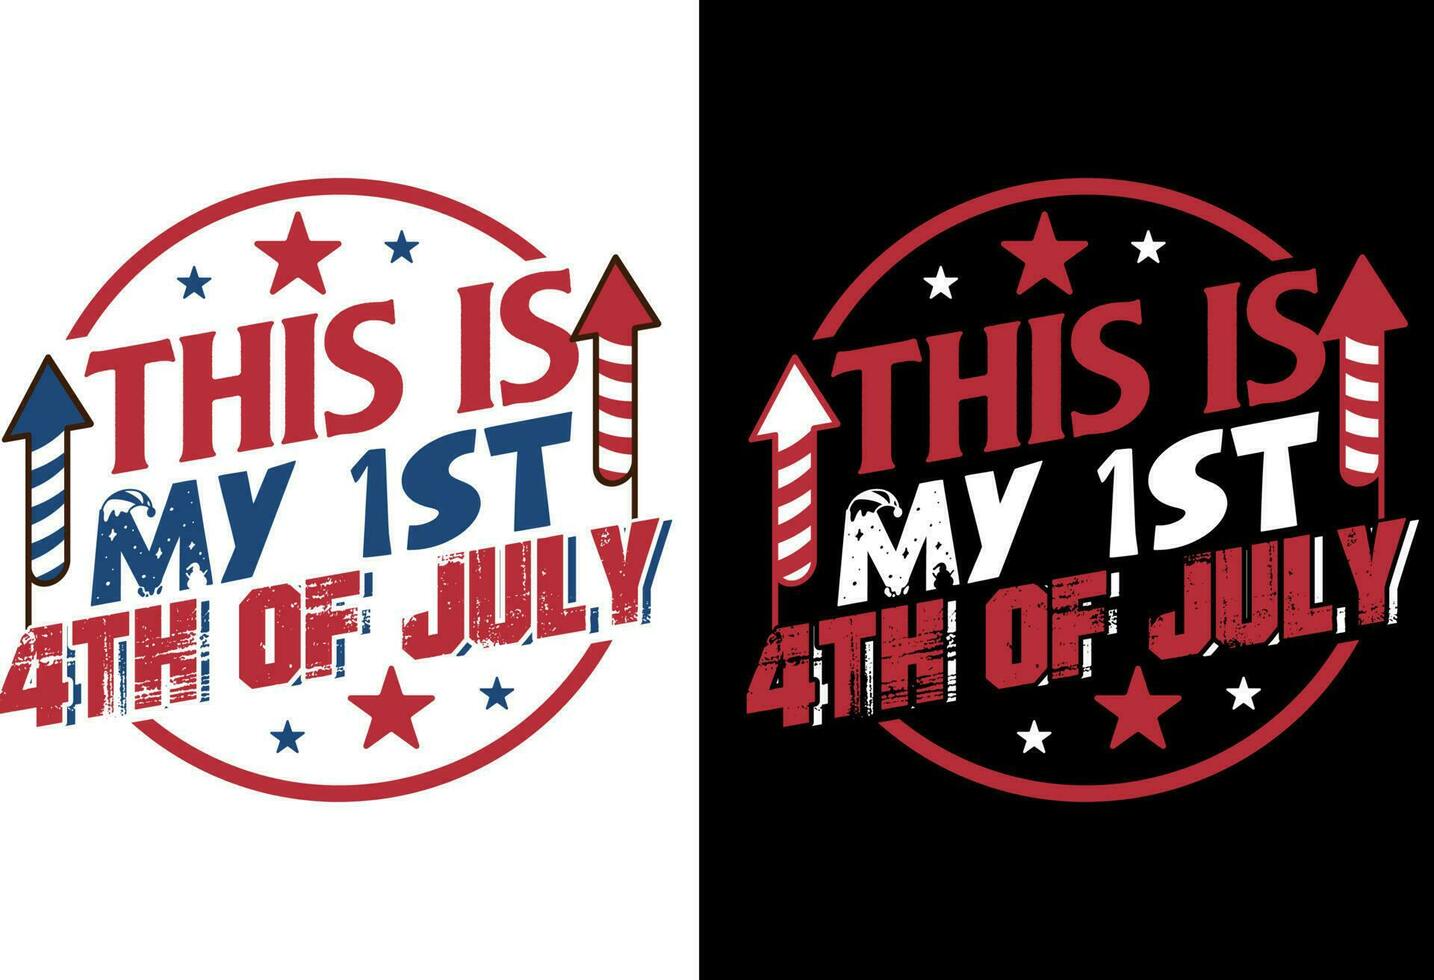 4 .. von Juli Shirt, glücklich 4 .. Juli, USA T-Shirt Design, Unabhängigkeit T-Shirt, 4 .. von Juli T-Shirt Design, vektor